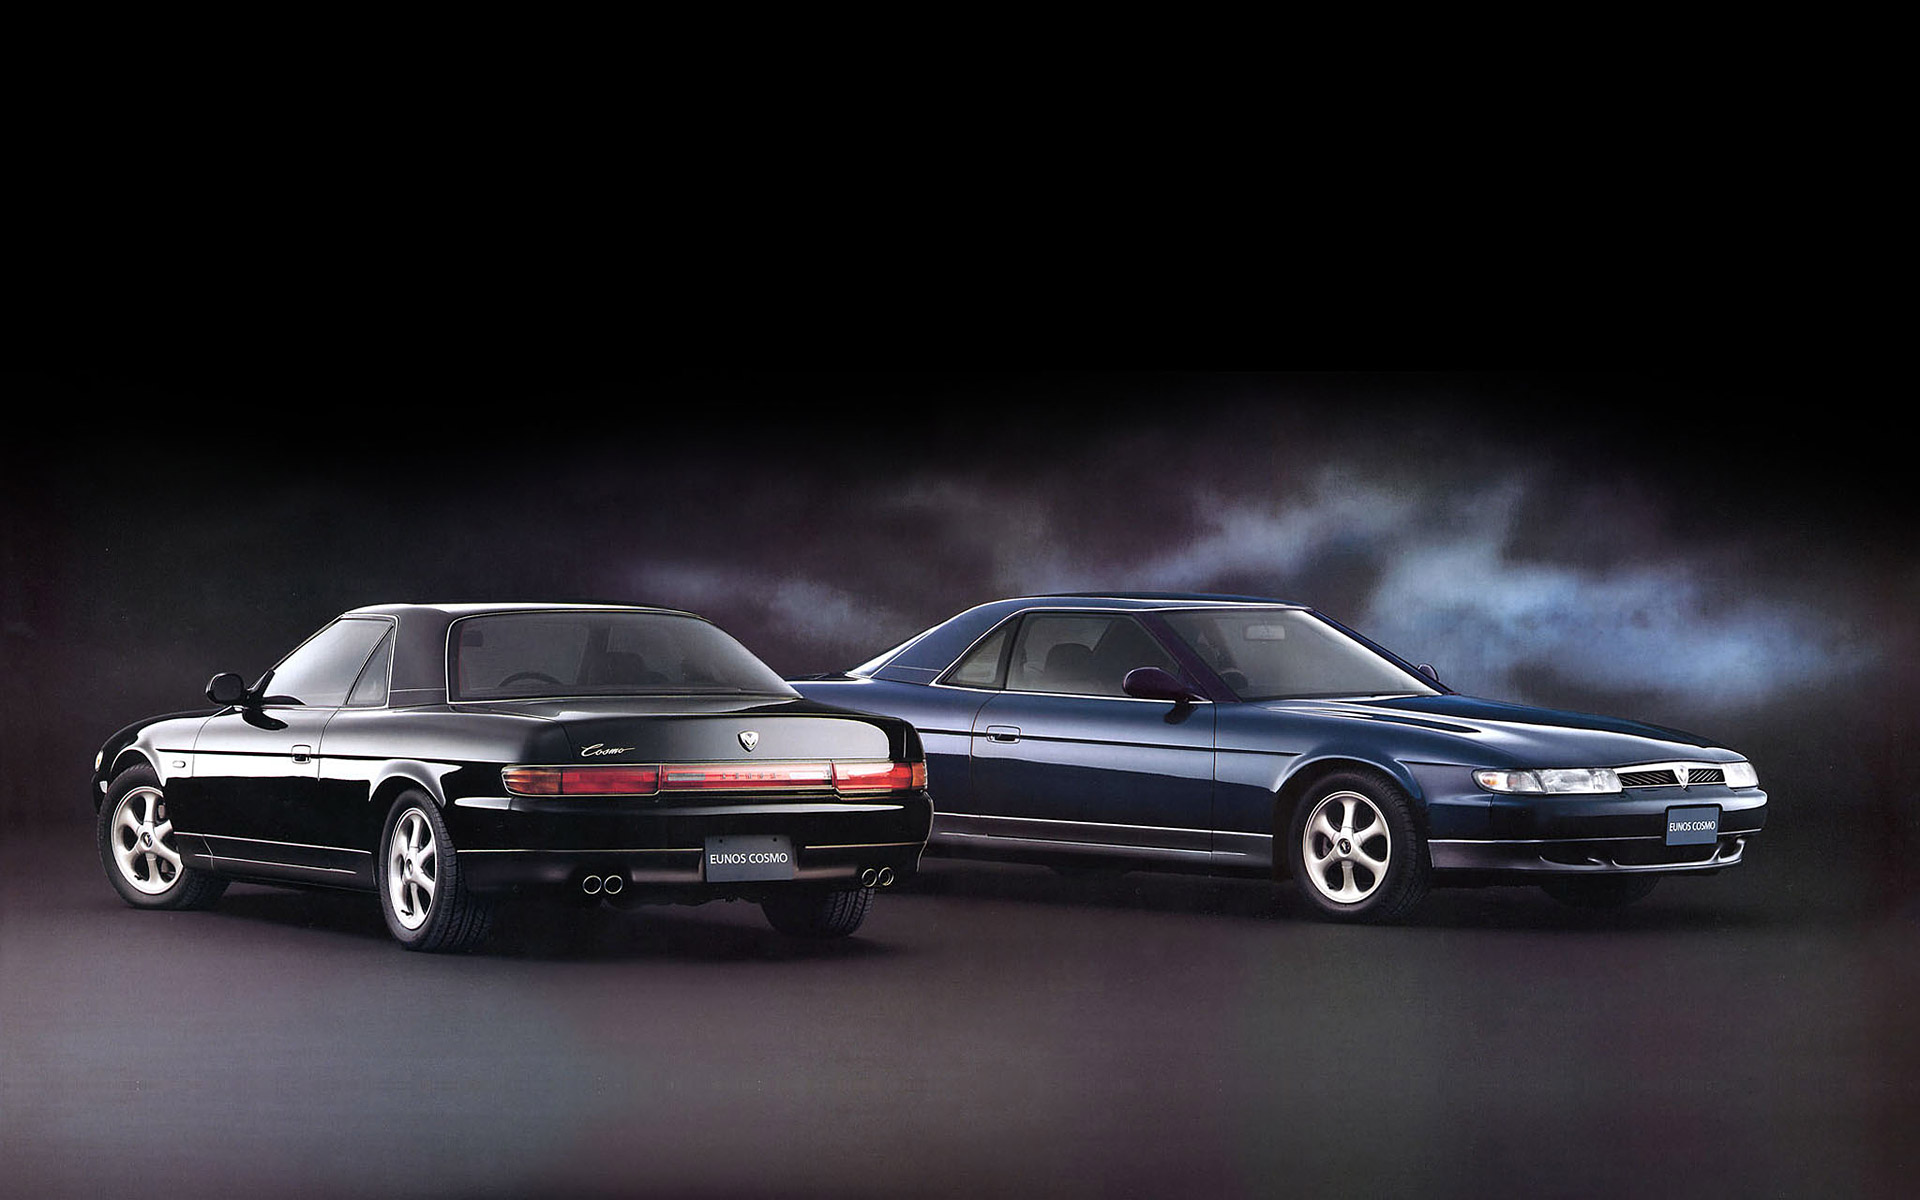  1990 Mazda Eunos Cosmo Wallpaper.